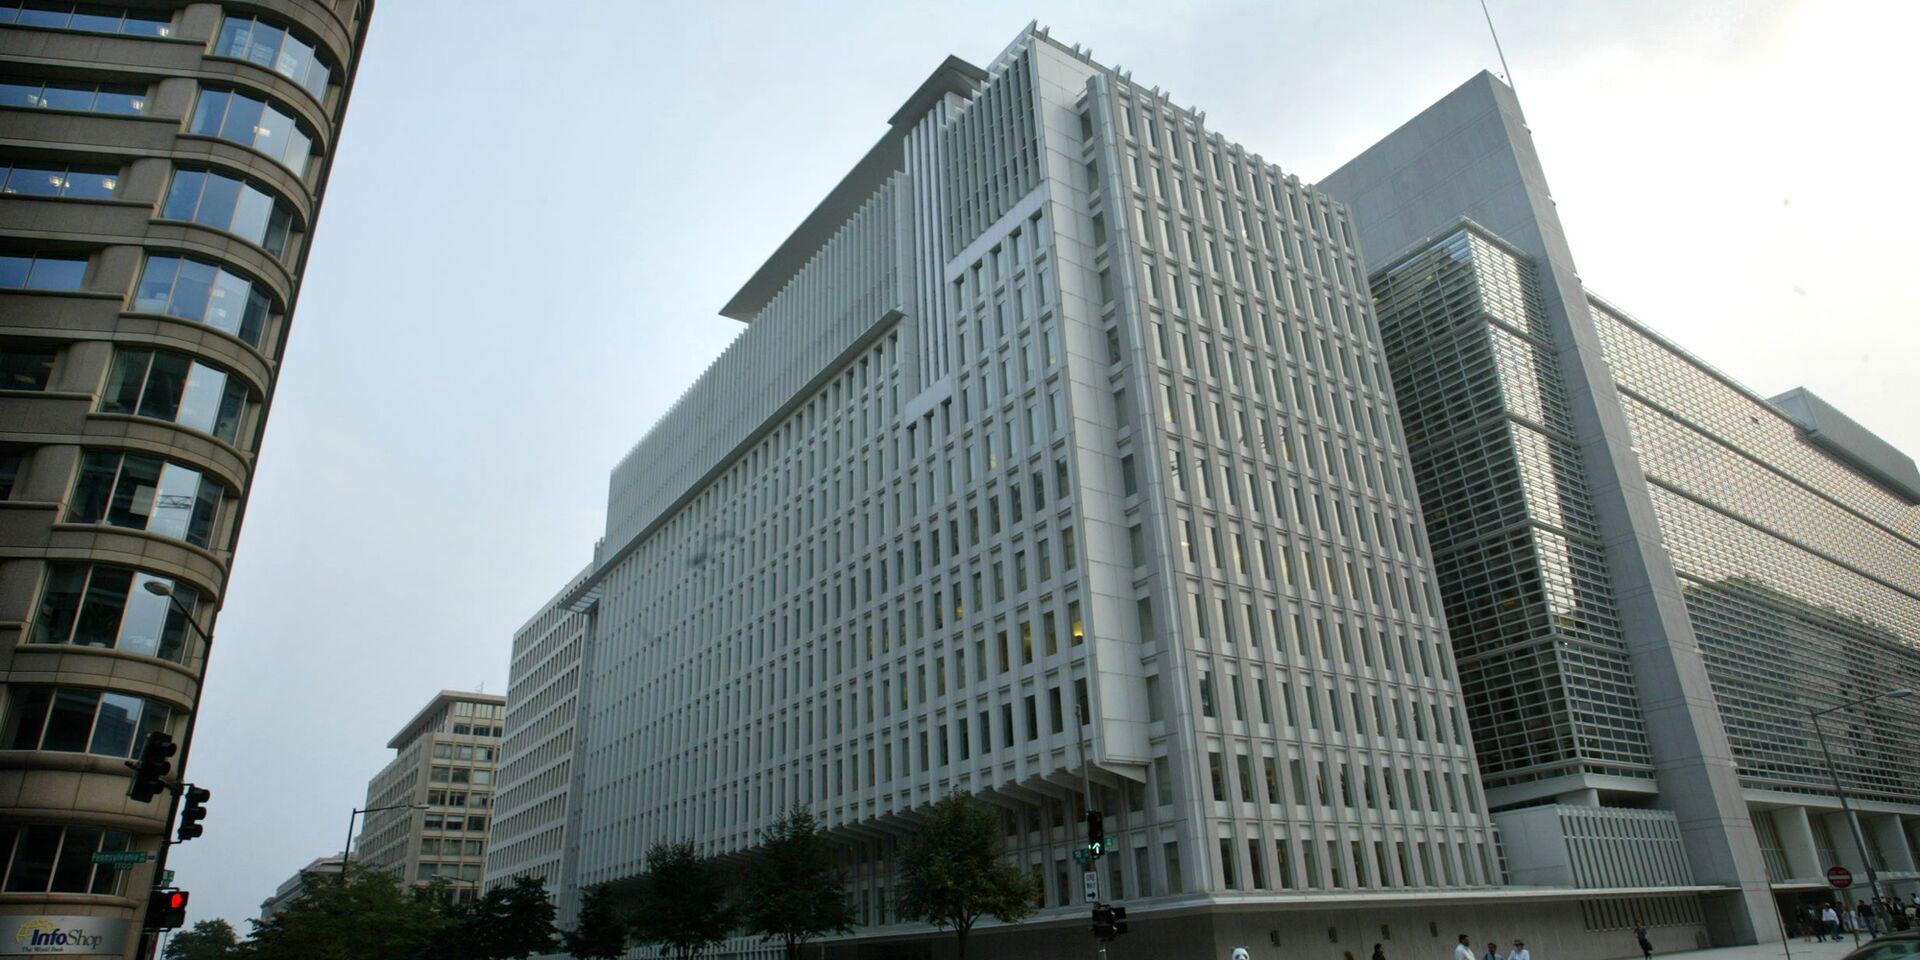 World bank is. Всемирный банк Вашингтон. Группа Всемирного банка штаб квартира. Штаб-квартира группы Всемирного банка в Вашингтоне. Всемирный банк здание США.